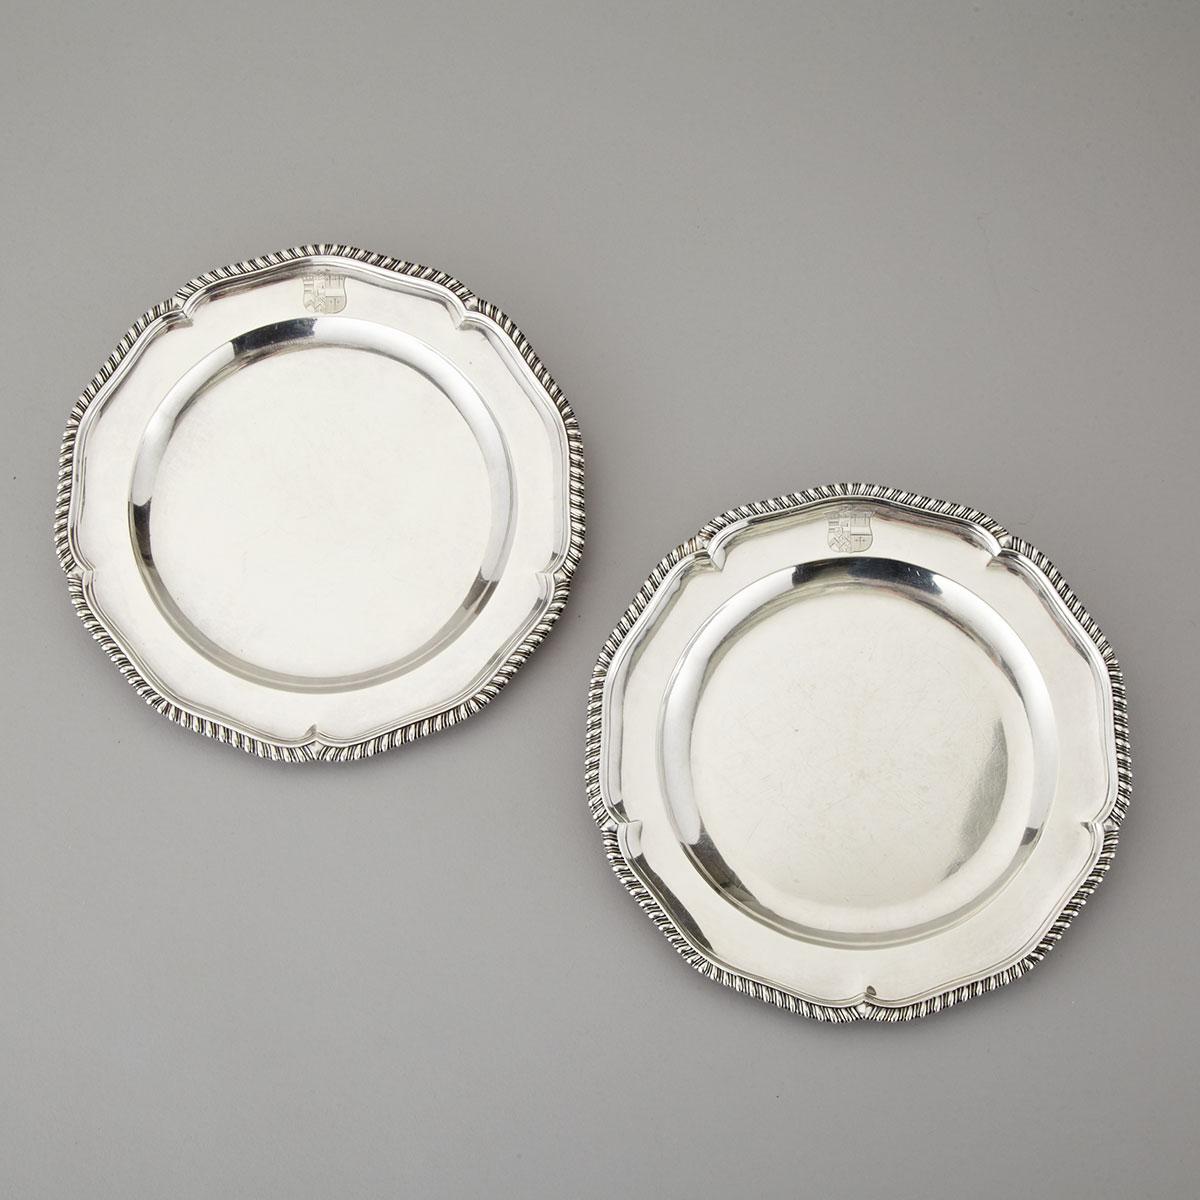 Pair of George III Silver Dinner Plates, Andrew Fogelberg & Stephen Gilbert, London, 1792